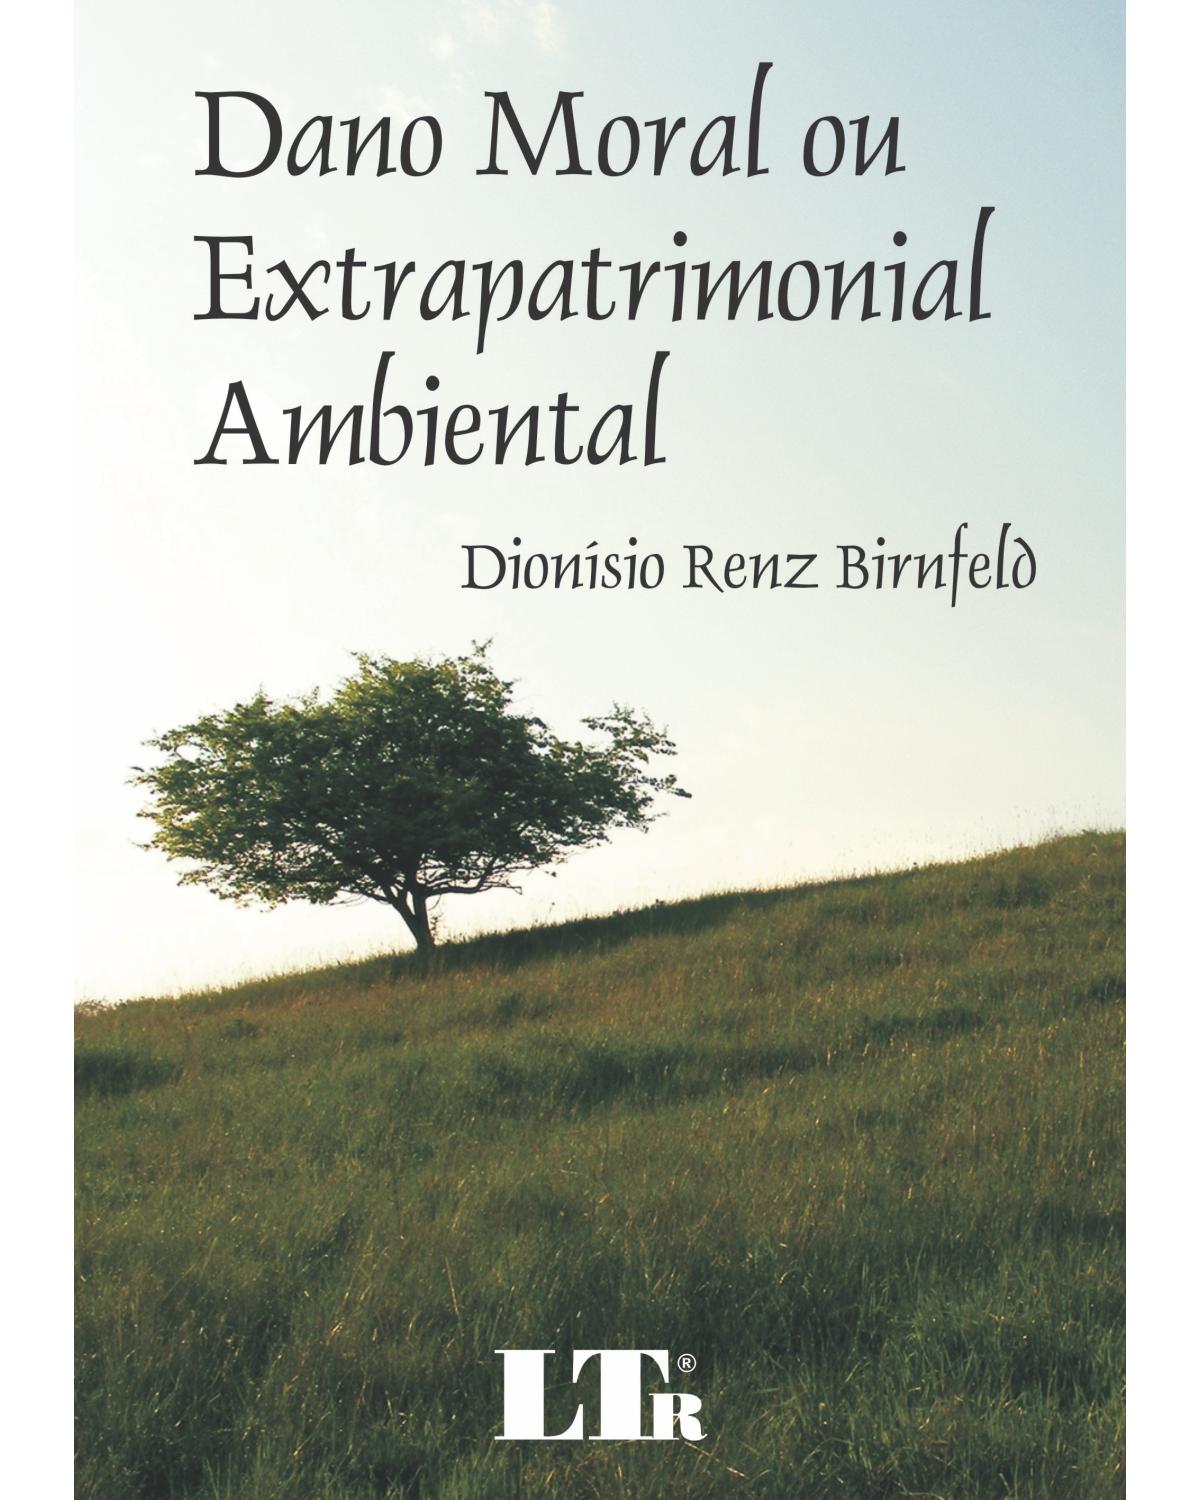 Dano moral ou extrapatrimonial ambiental - 1ª Edição